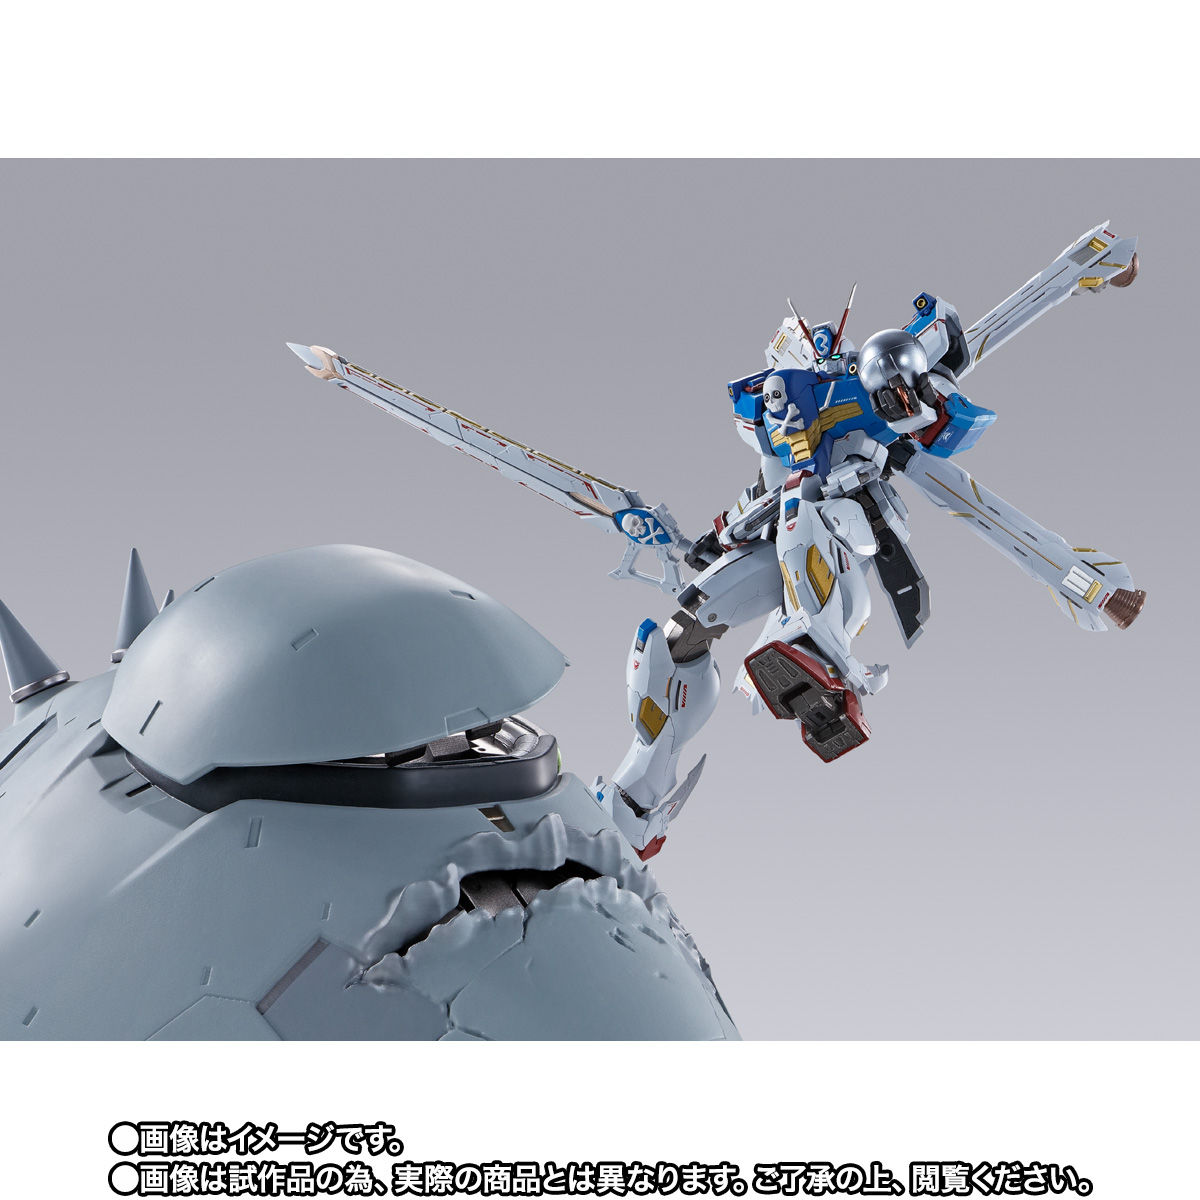 【限定販売】METAL BUILD『クロスボーン・ガンダムX3』機動戦士クロスボーン・ガンダム 可動フィギュア-007